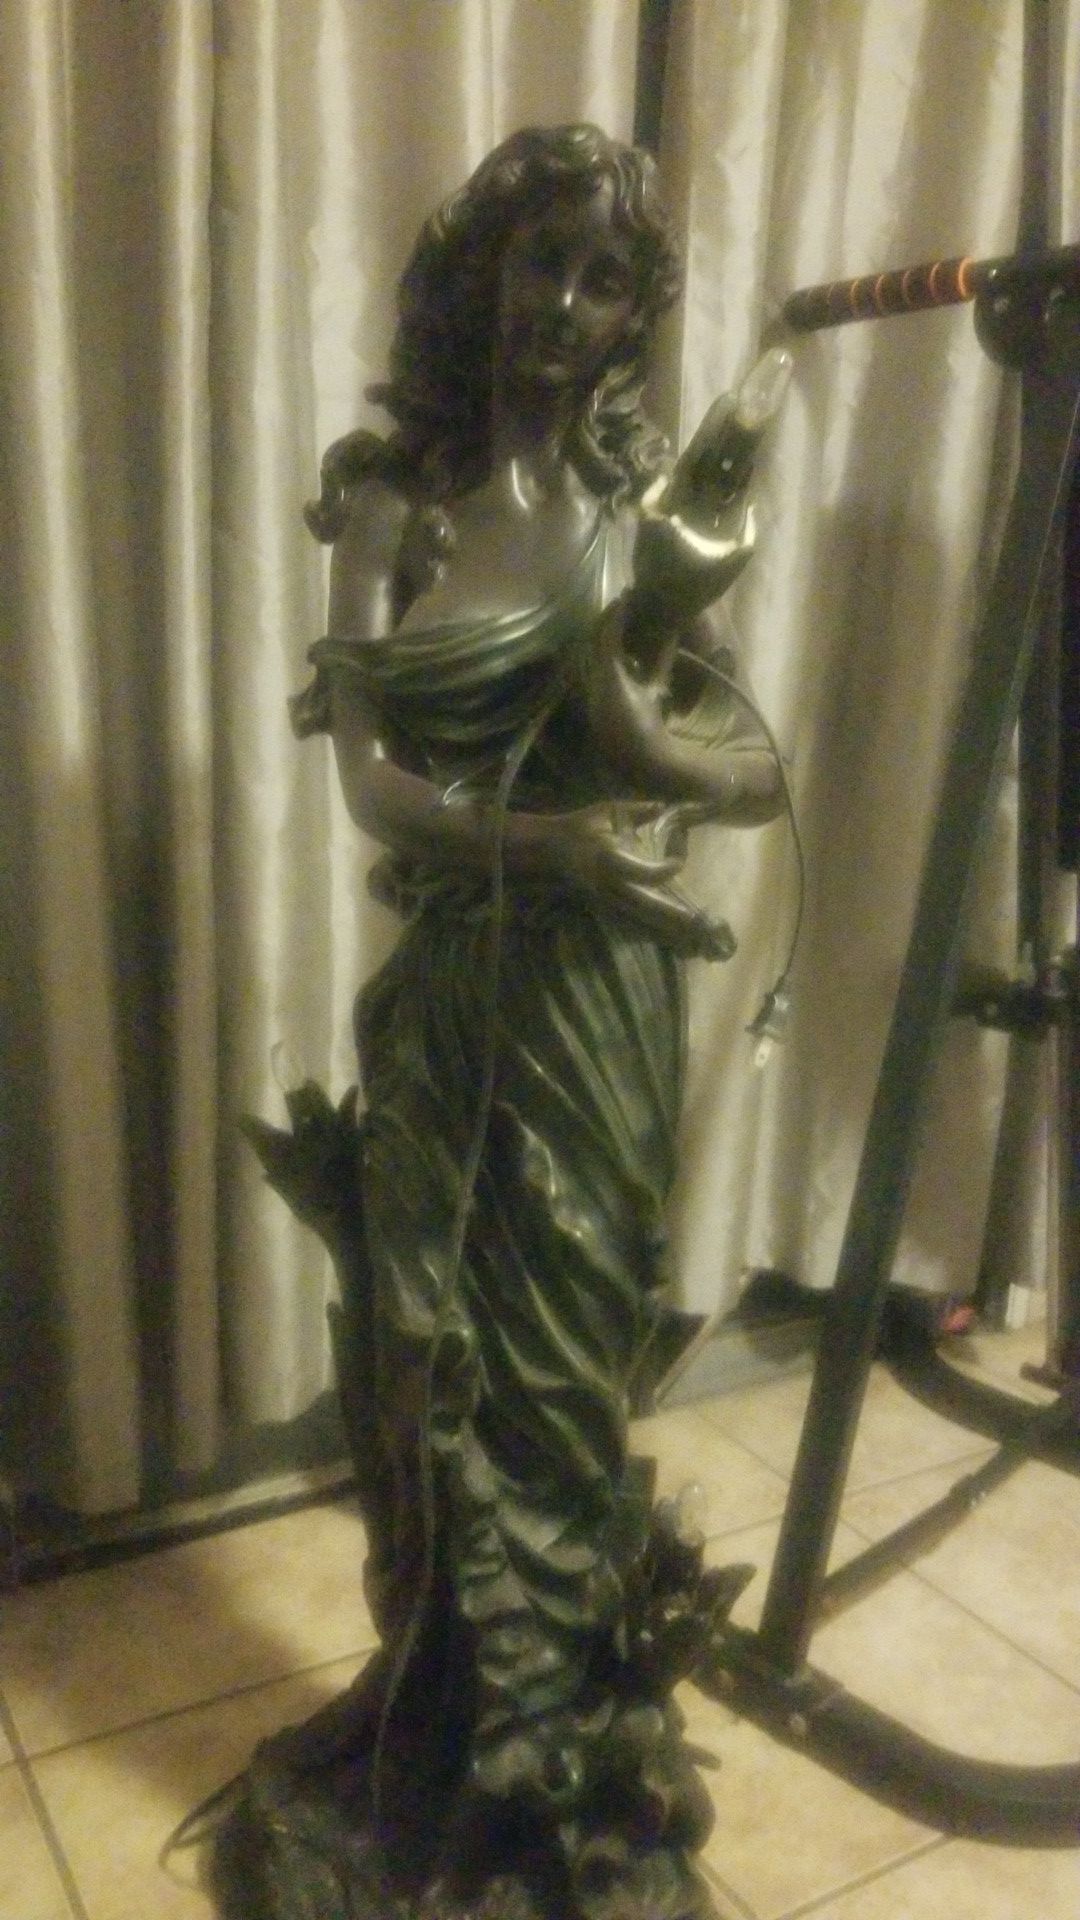 Lamp statue